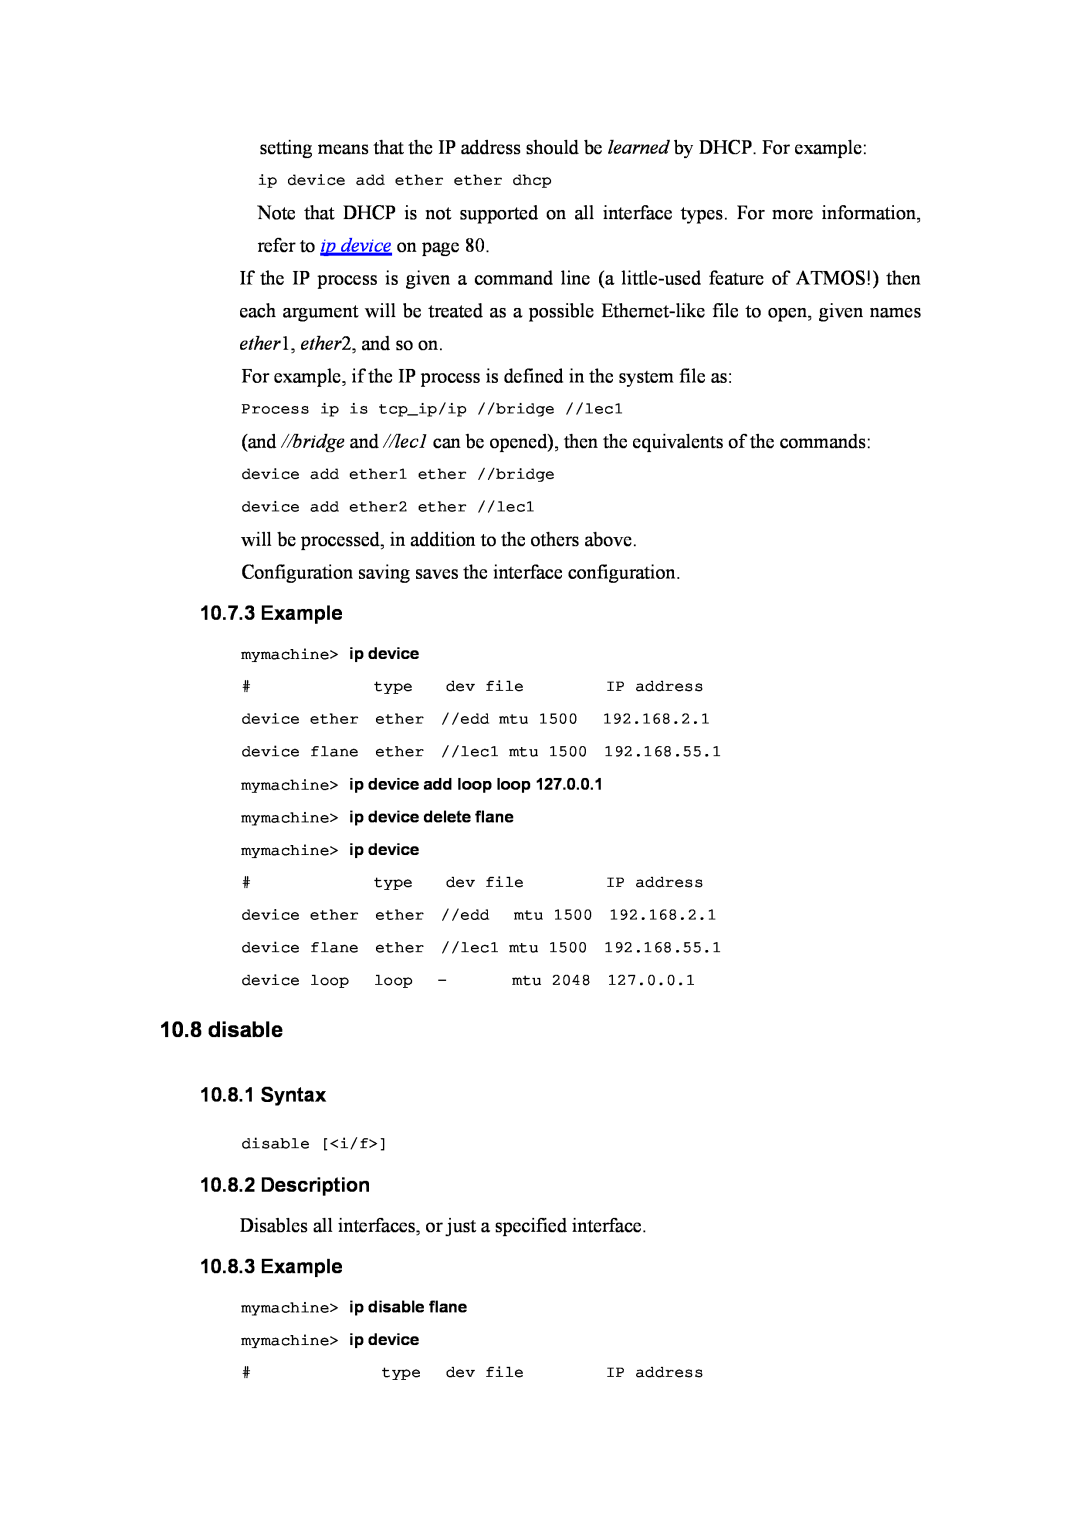 Atlantis Land A02-RA(Atmos)_ME01 manual disable, Example, Syntax, Description 